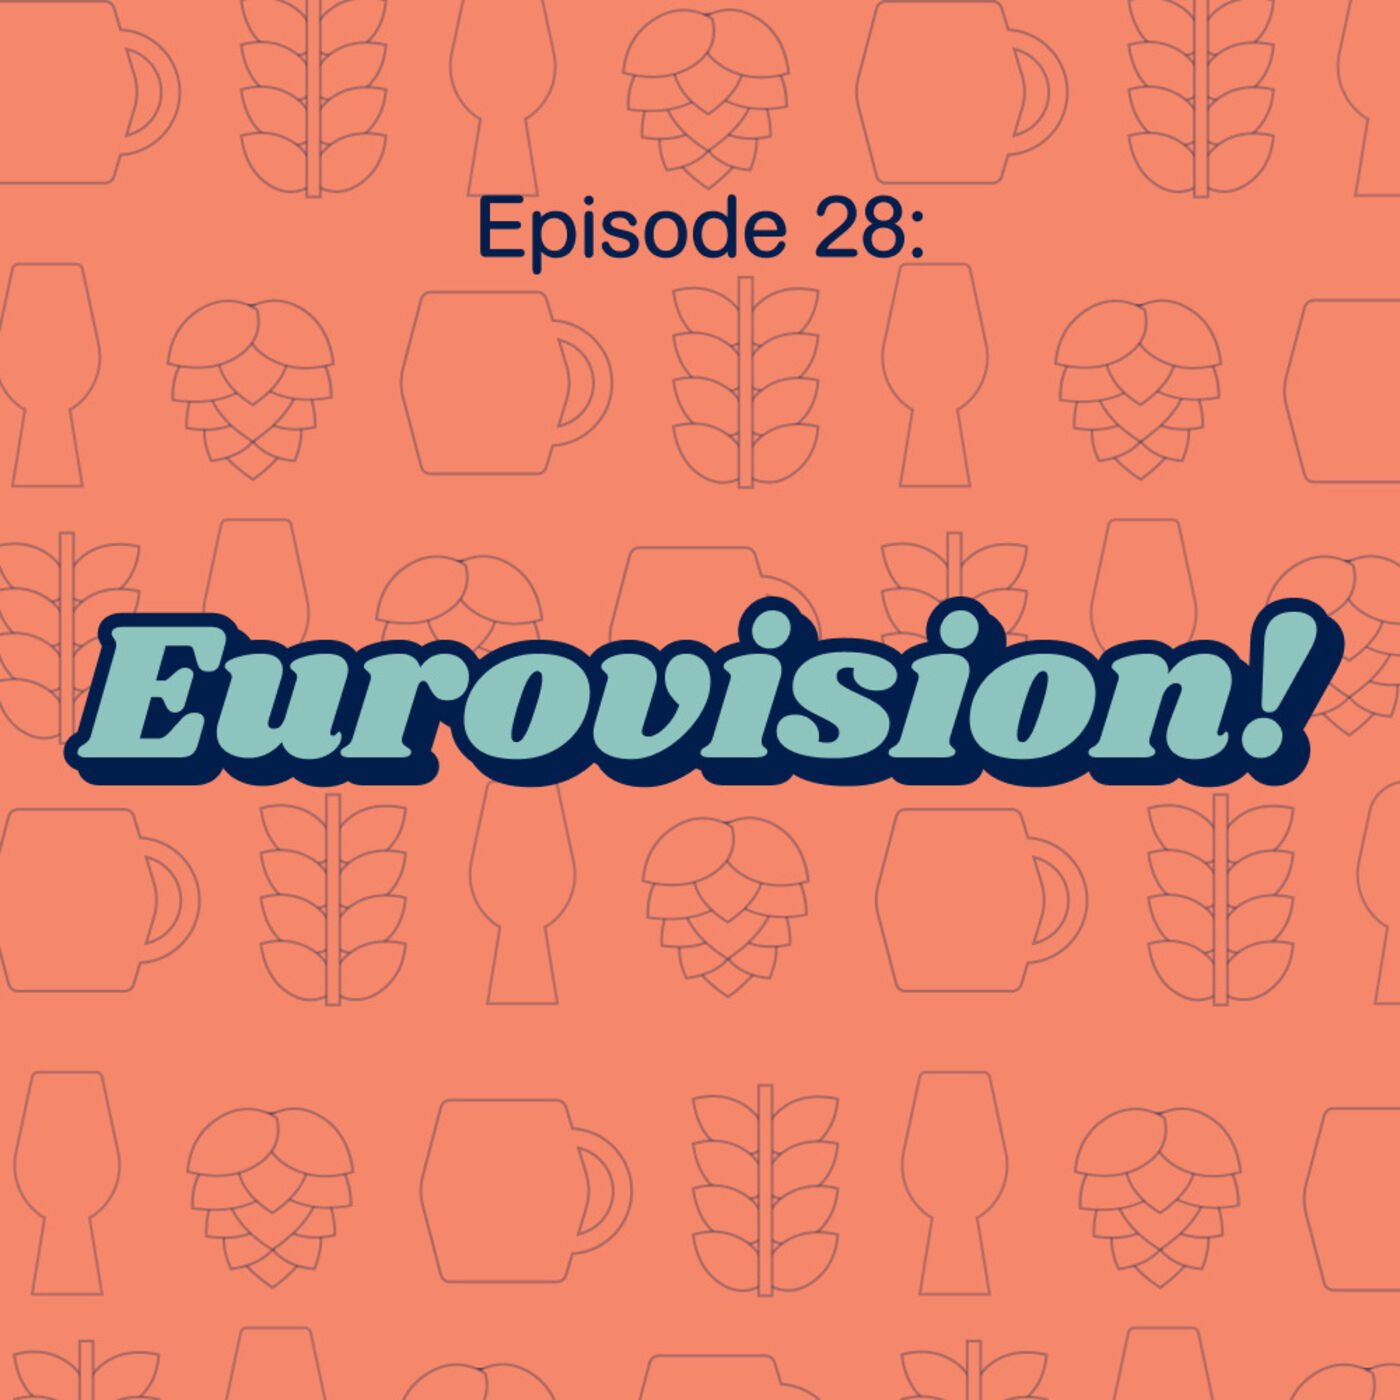 28: Eurovision!